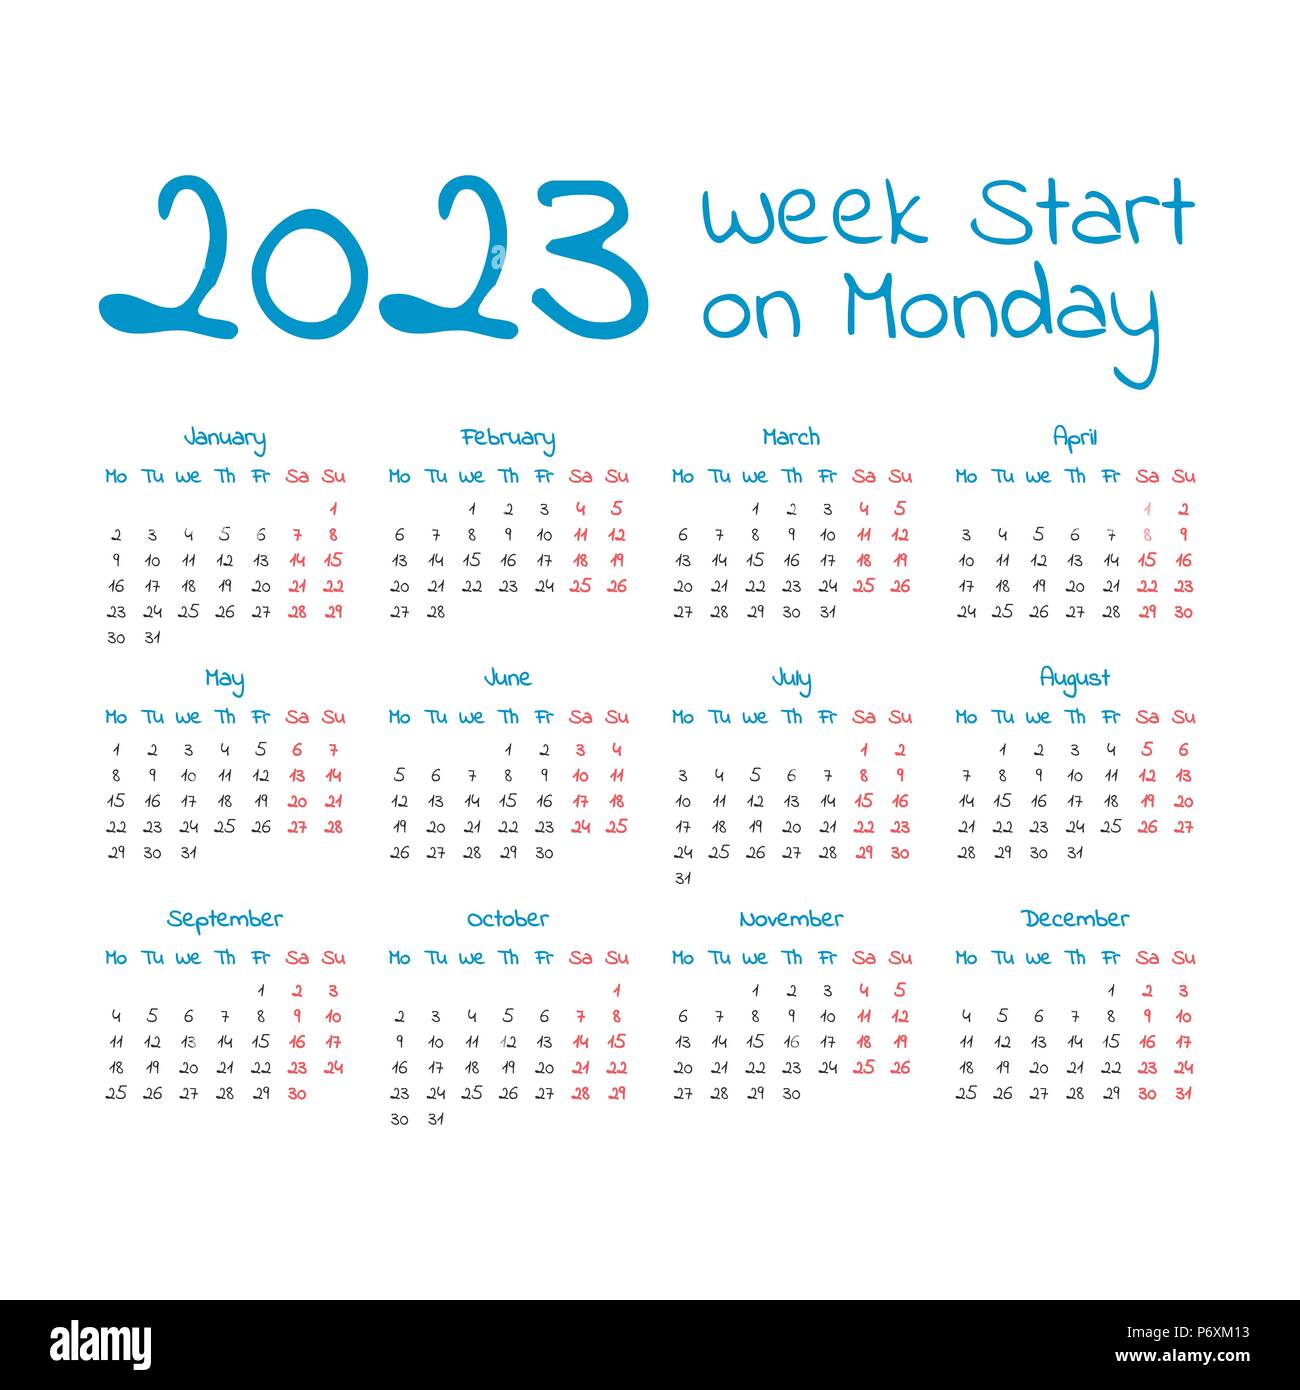 Calendar 2023 In Weeks - Time and Date Calendar 2023 Canada